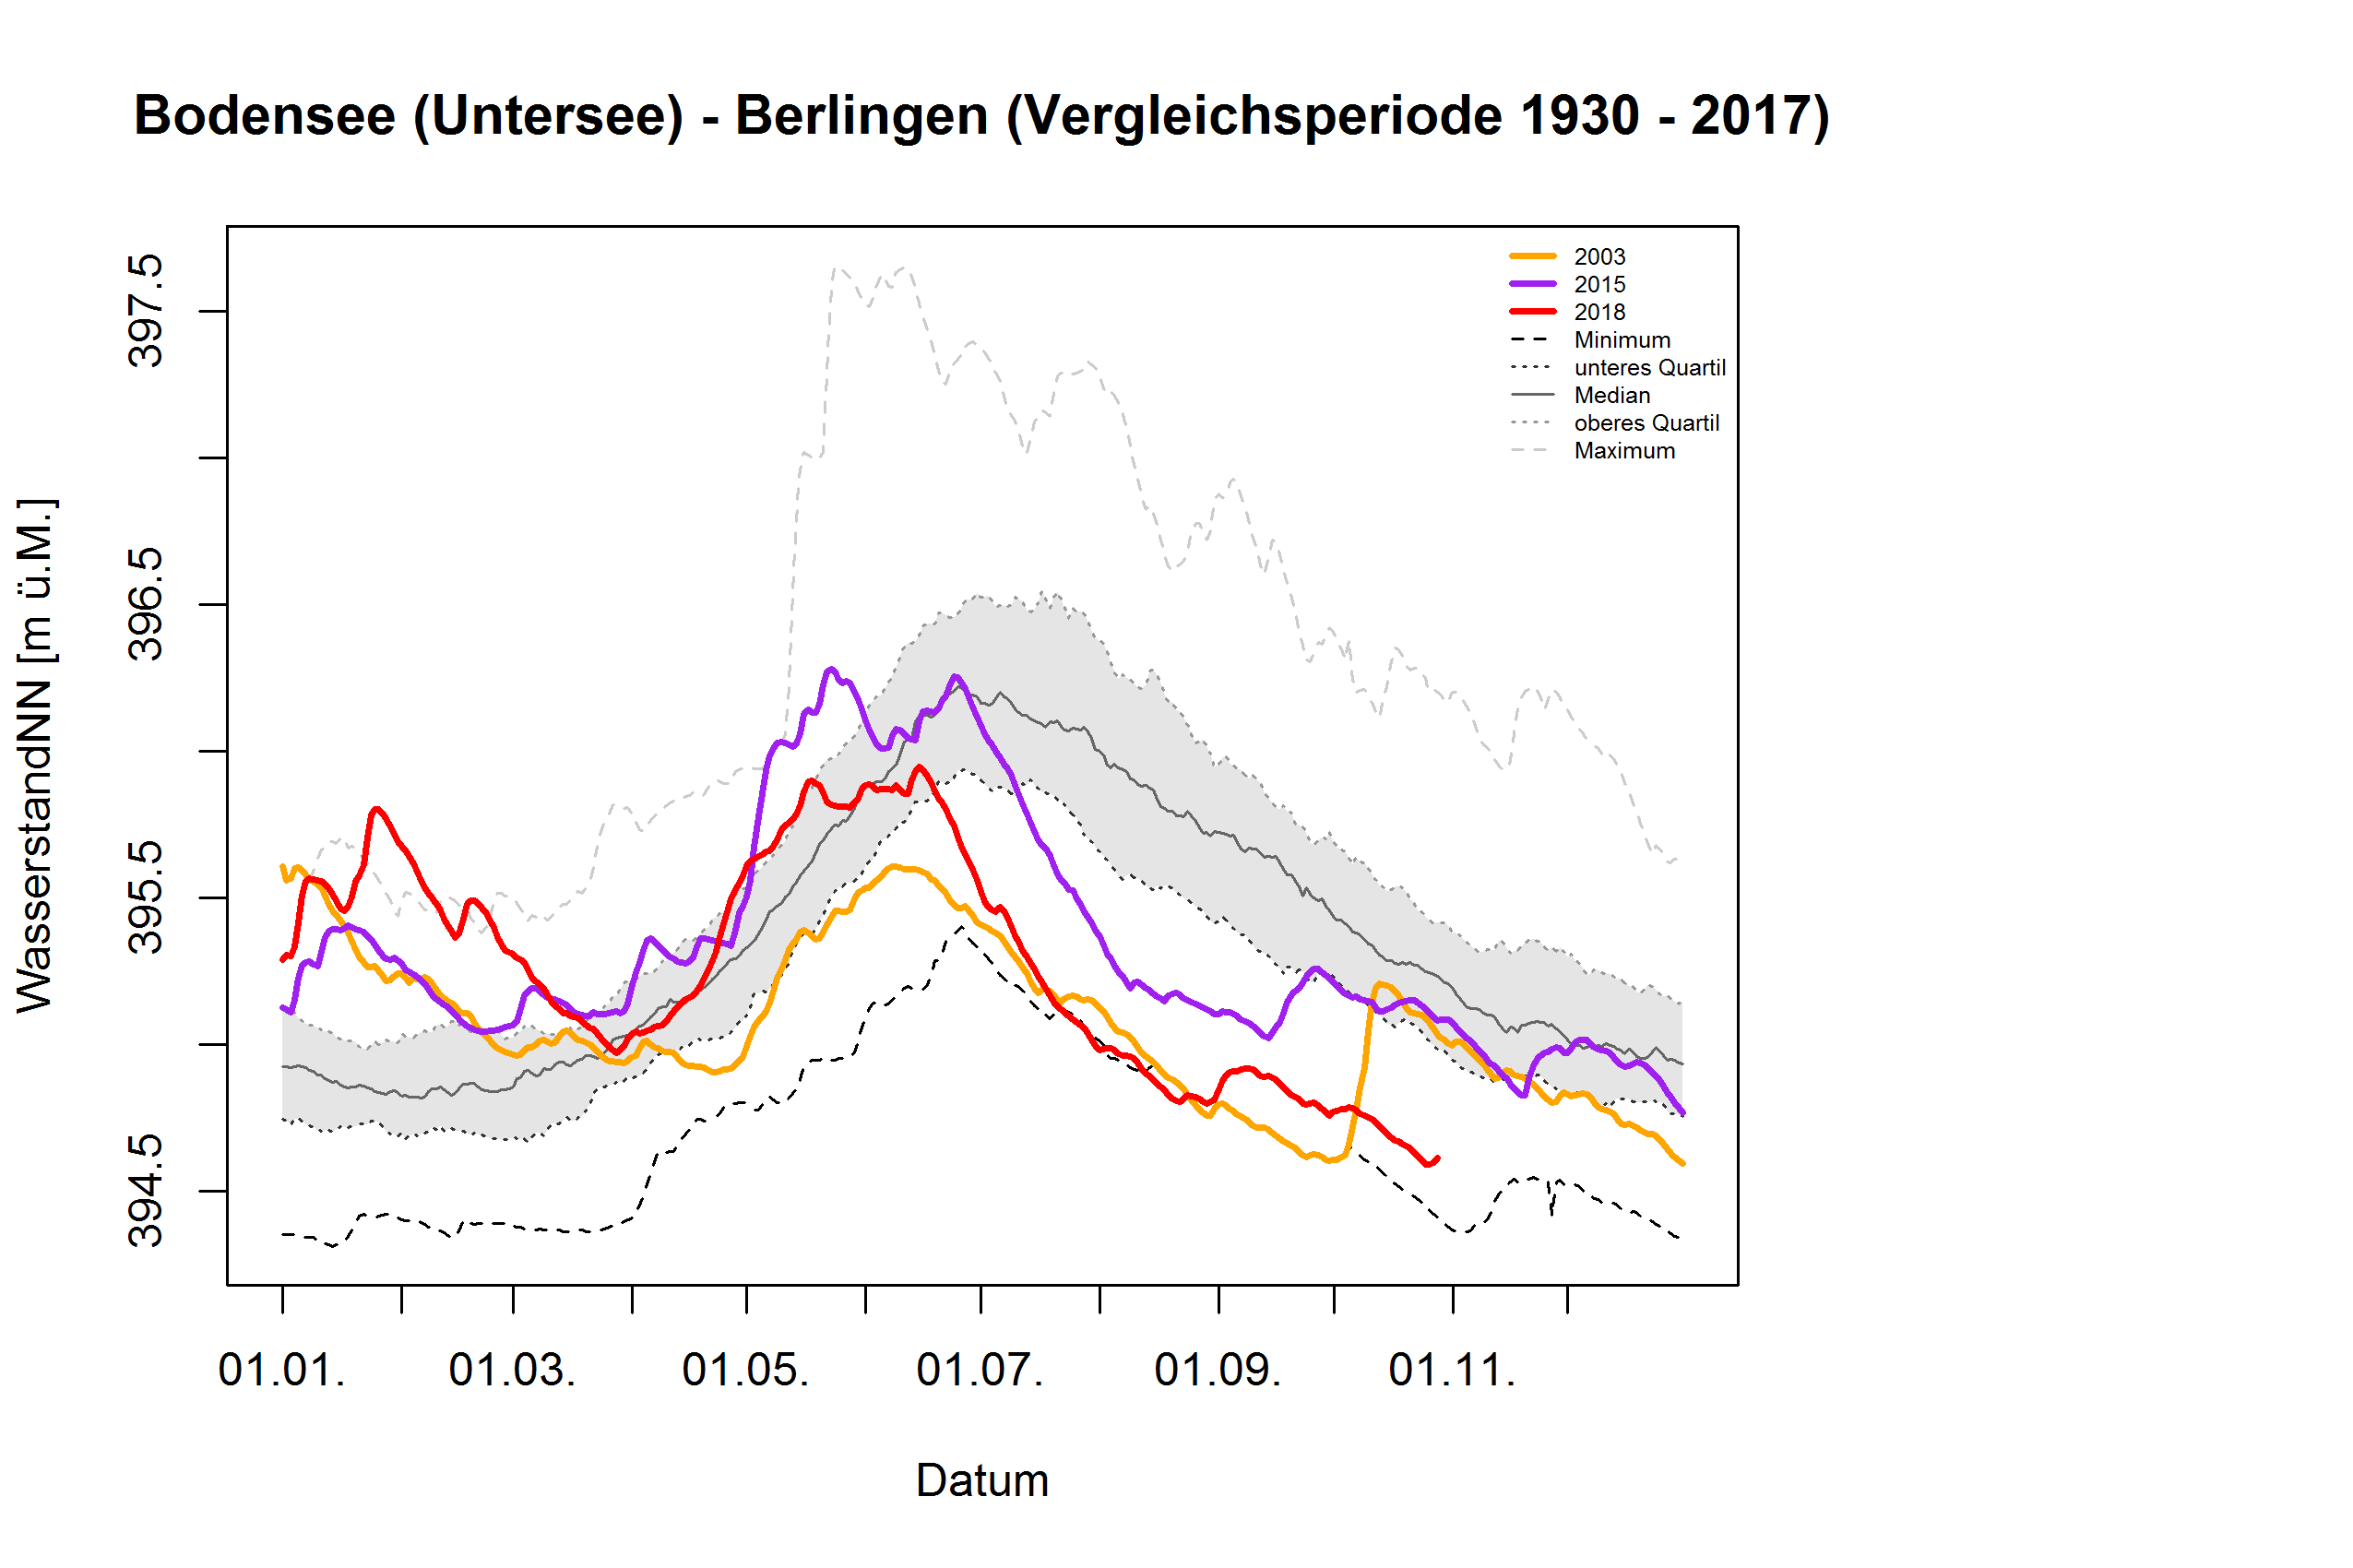 Bodensee (Untersee) - Berlingen: Vergleichsperiode 1930 - 2017